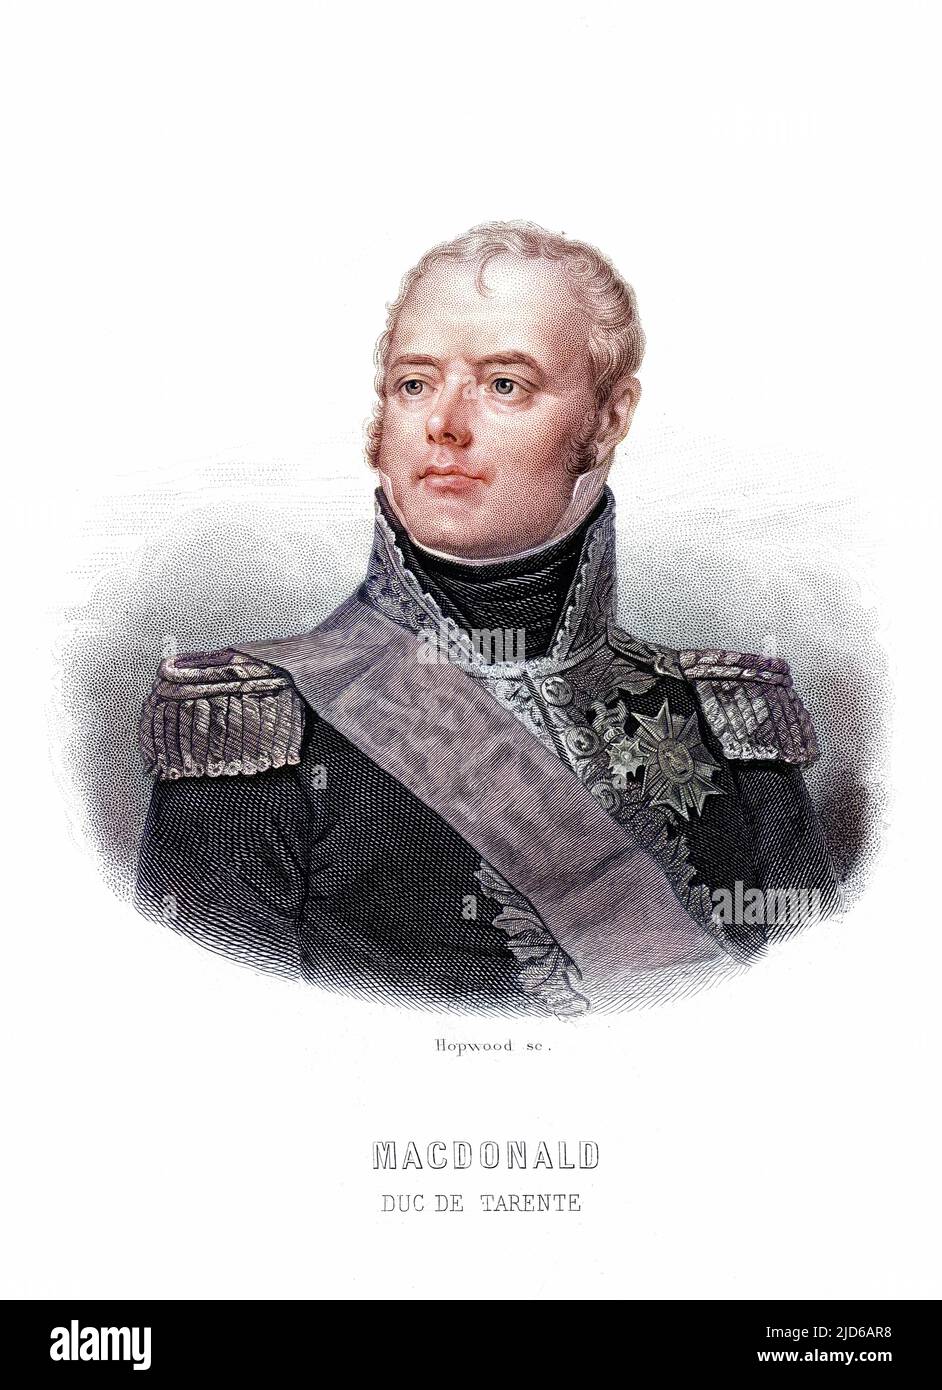 JACQUES-ETIENNE-ALEXANDRE MACDONALD comandante militare francese, marechal de France versione colorizzata di : 10163958 Data: 1765 - 1840 Foto Stock